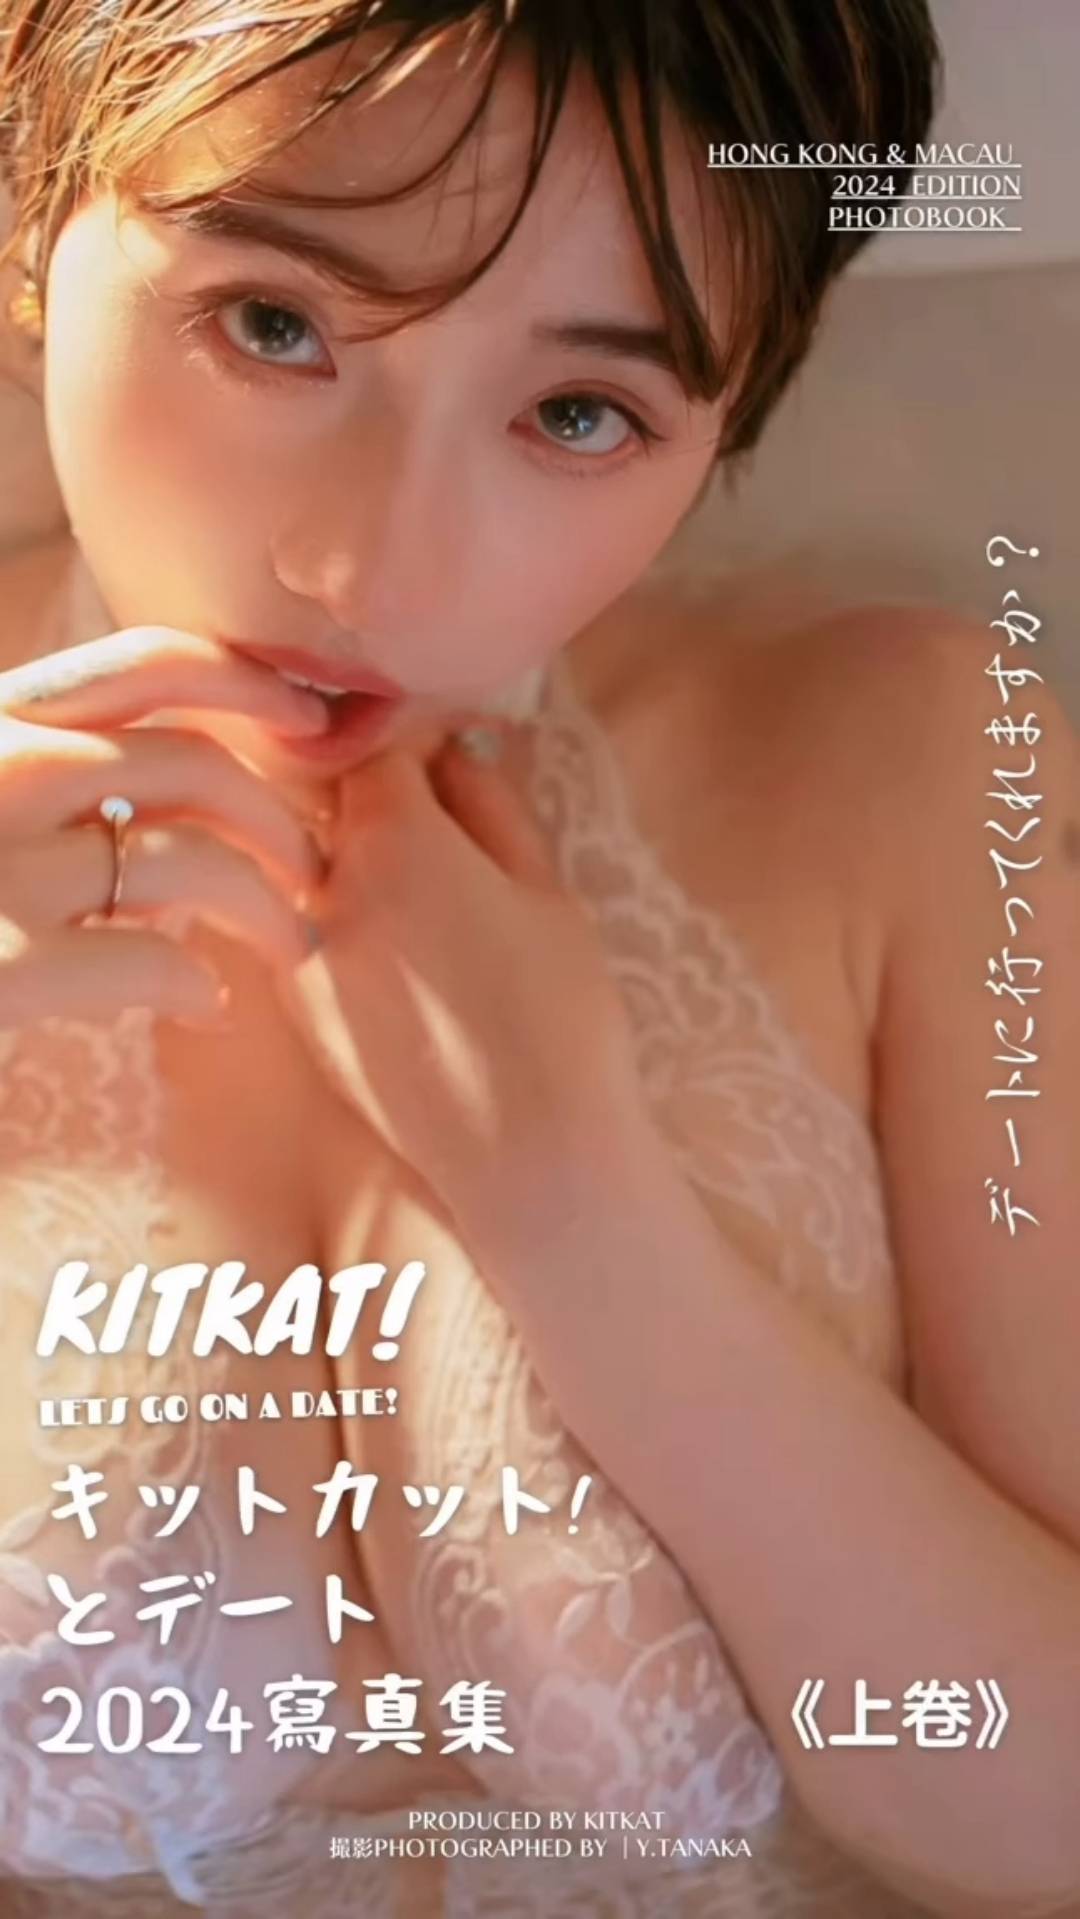 靓女插画师 kitkat KitKat KitKat即将再推新写真集，近日已开始预售。